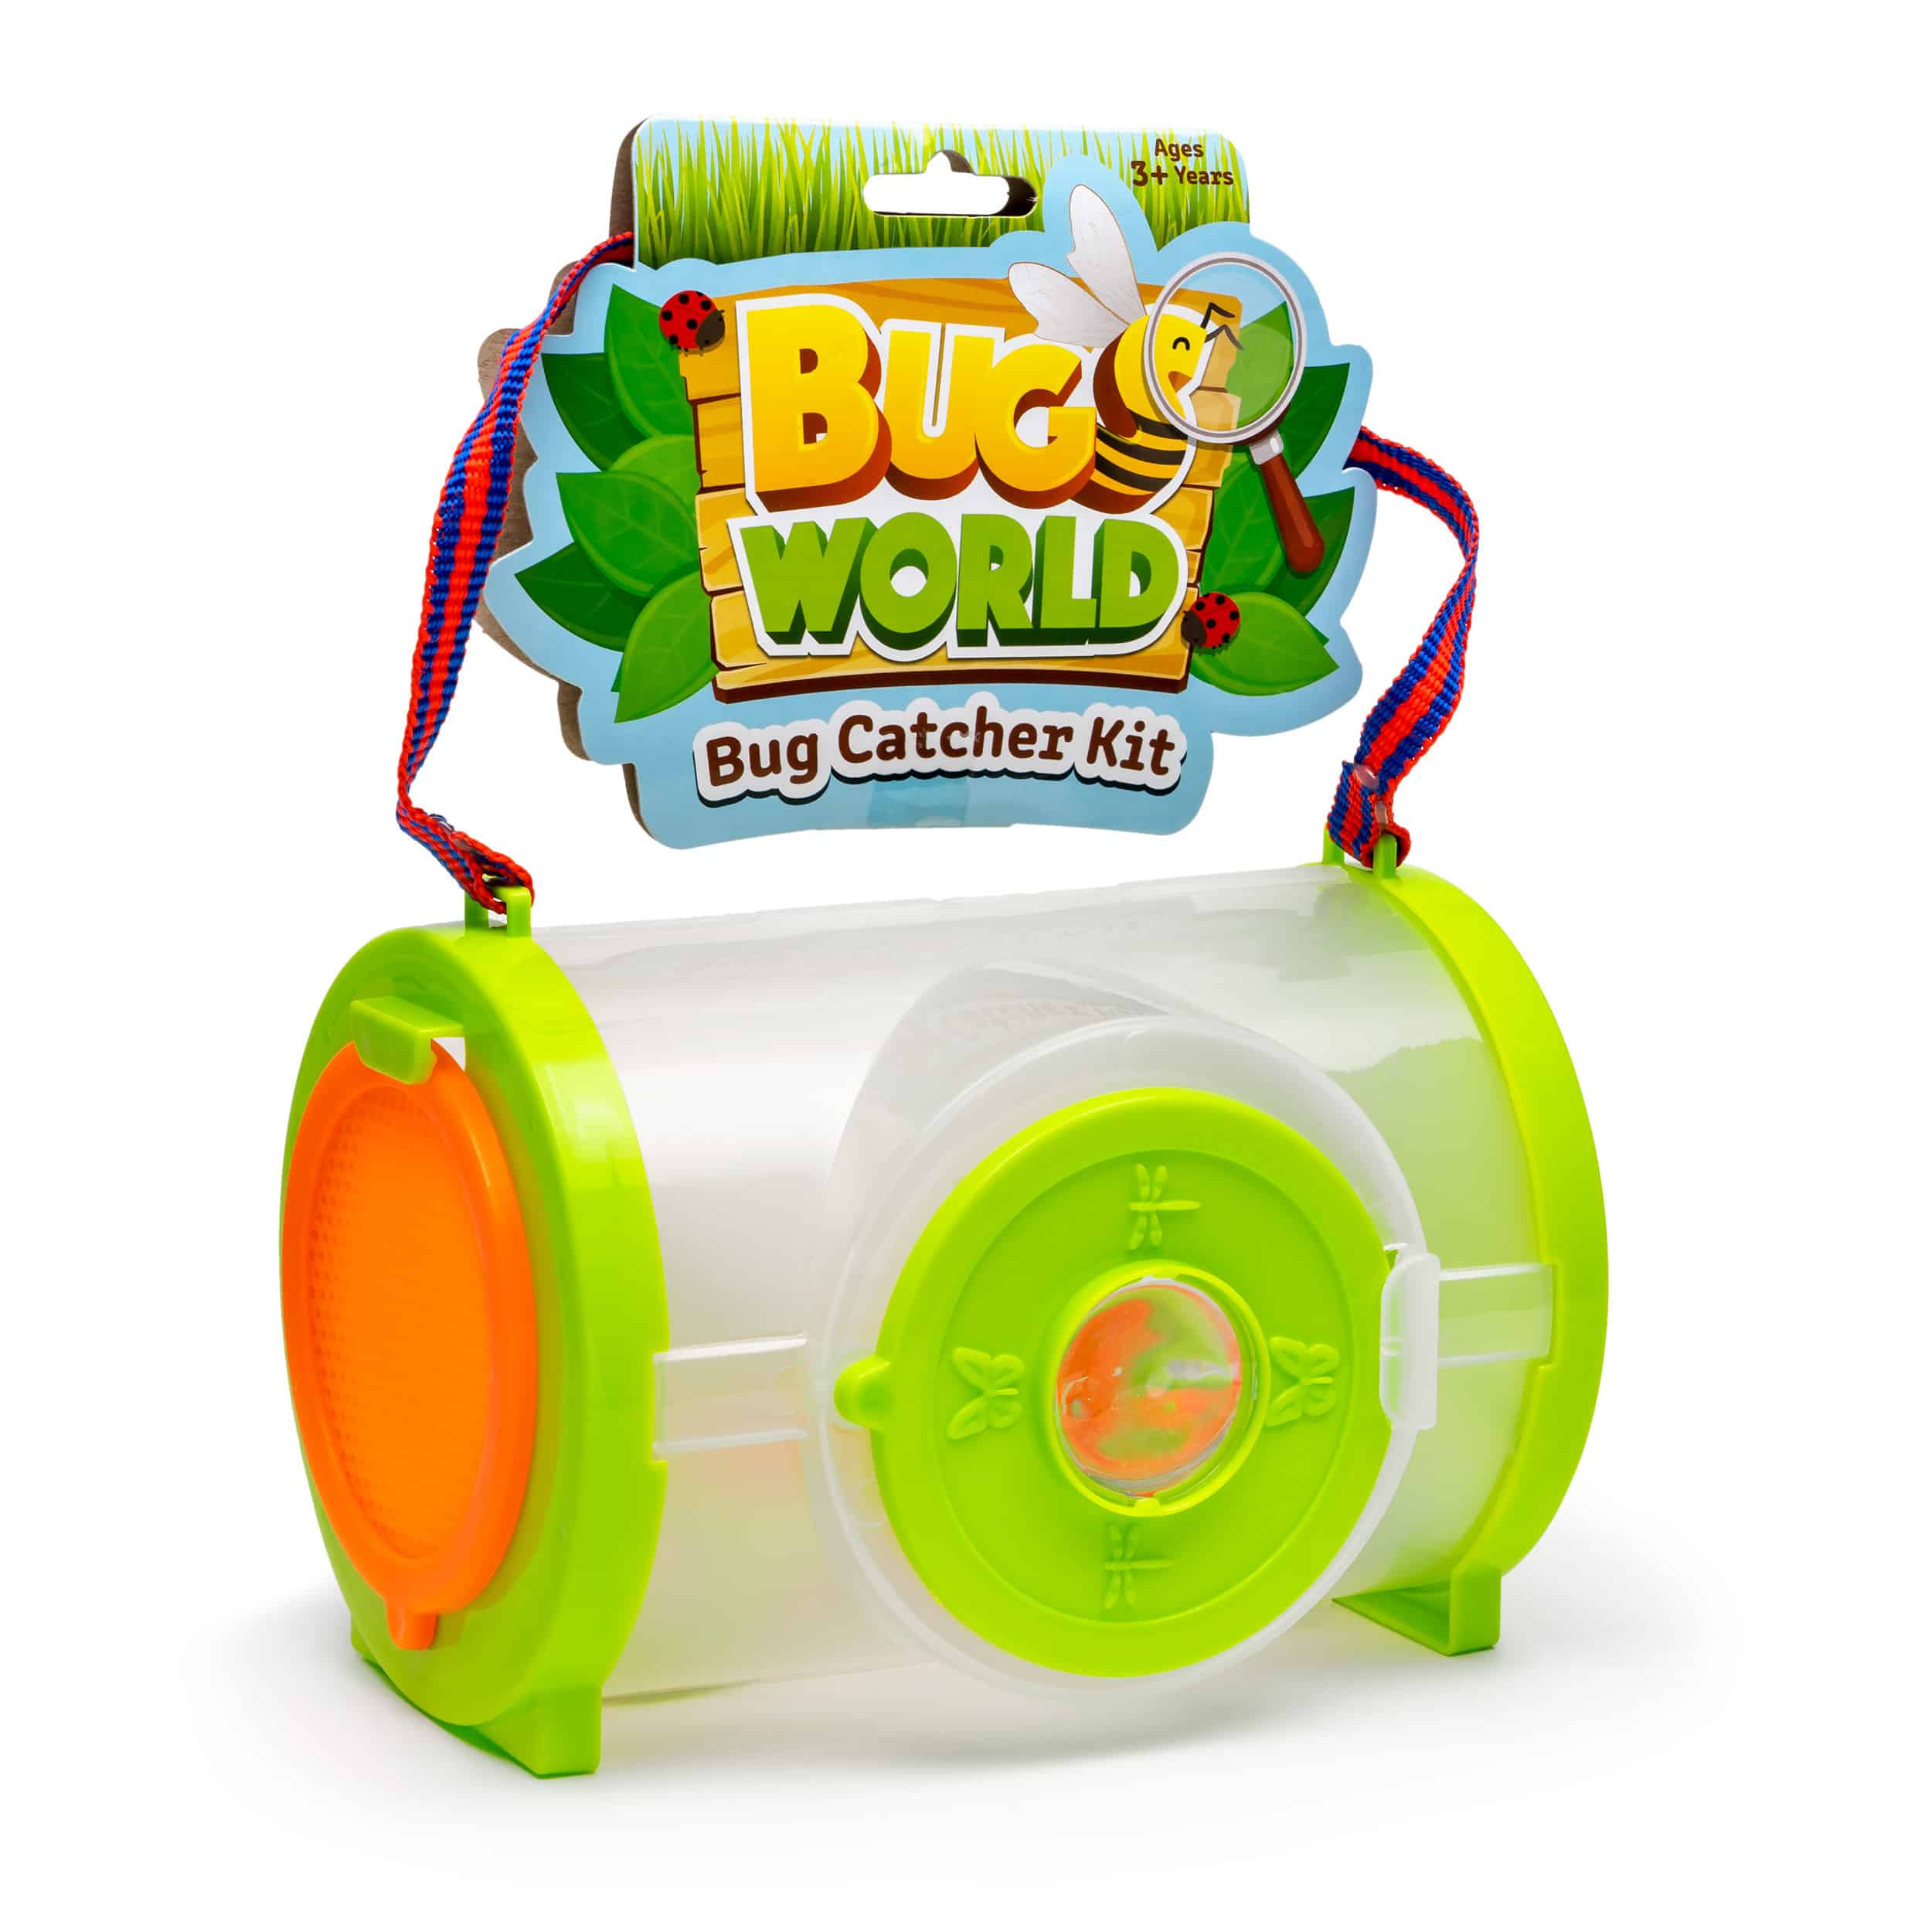 Bugs World - Bug Catching Kit